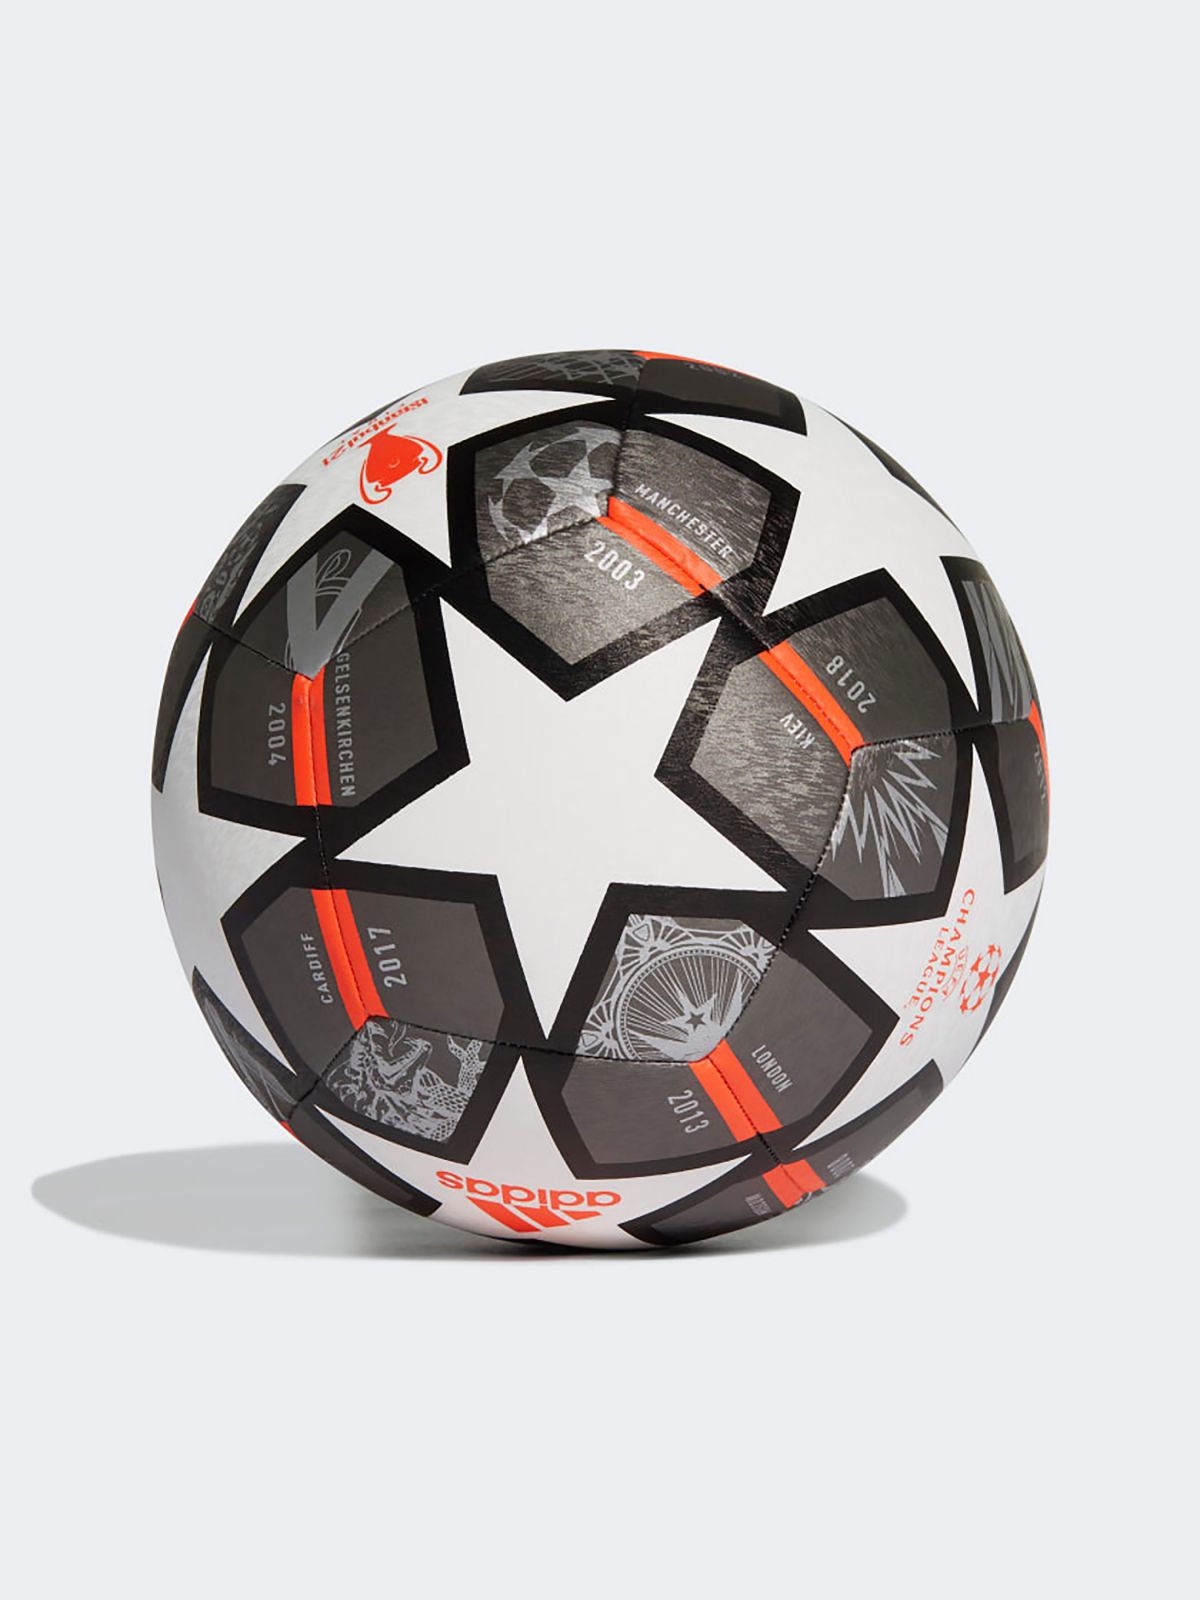  כדורגל UCL 21 עם לוגו של ADIDAS Performance